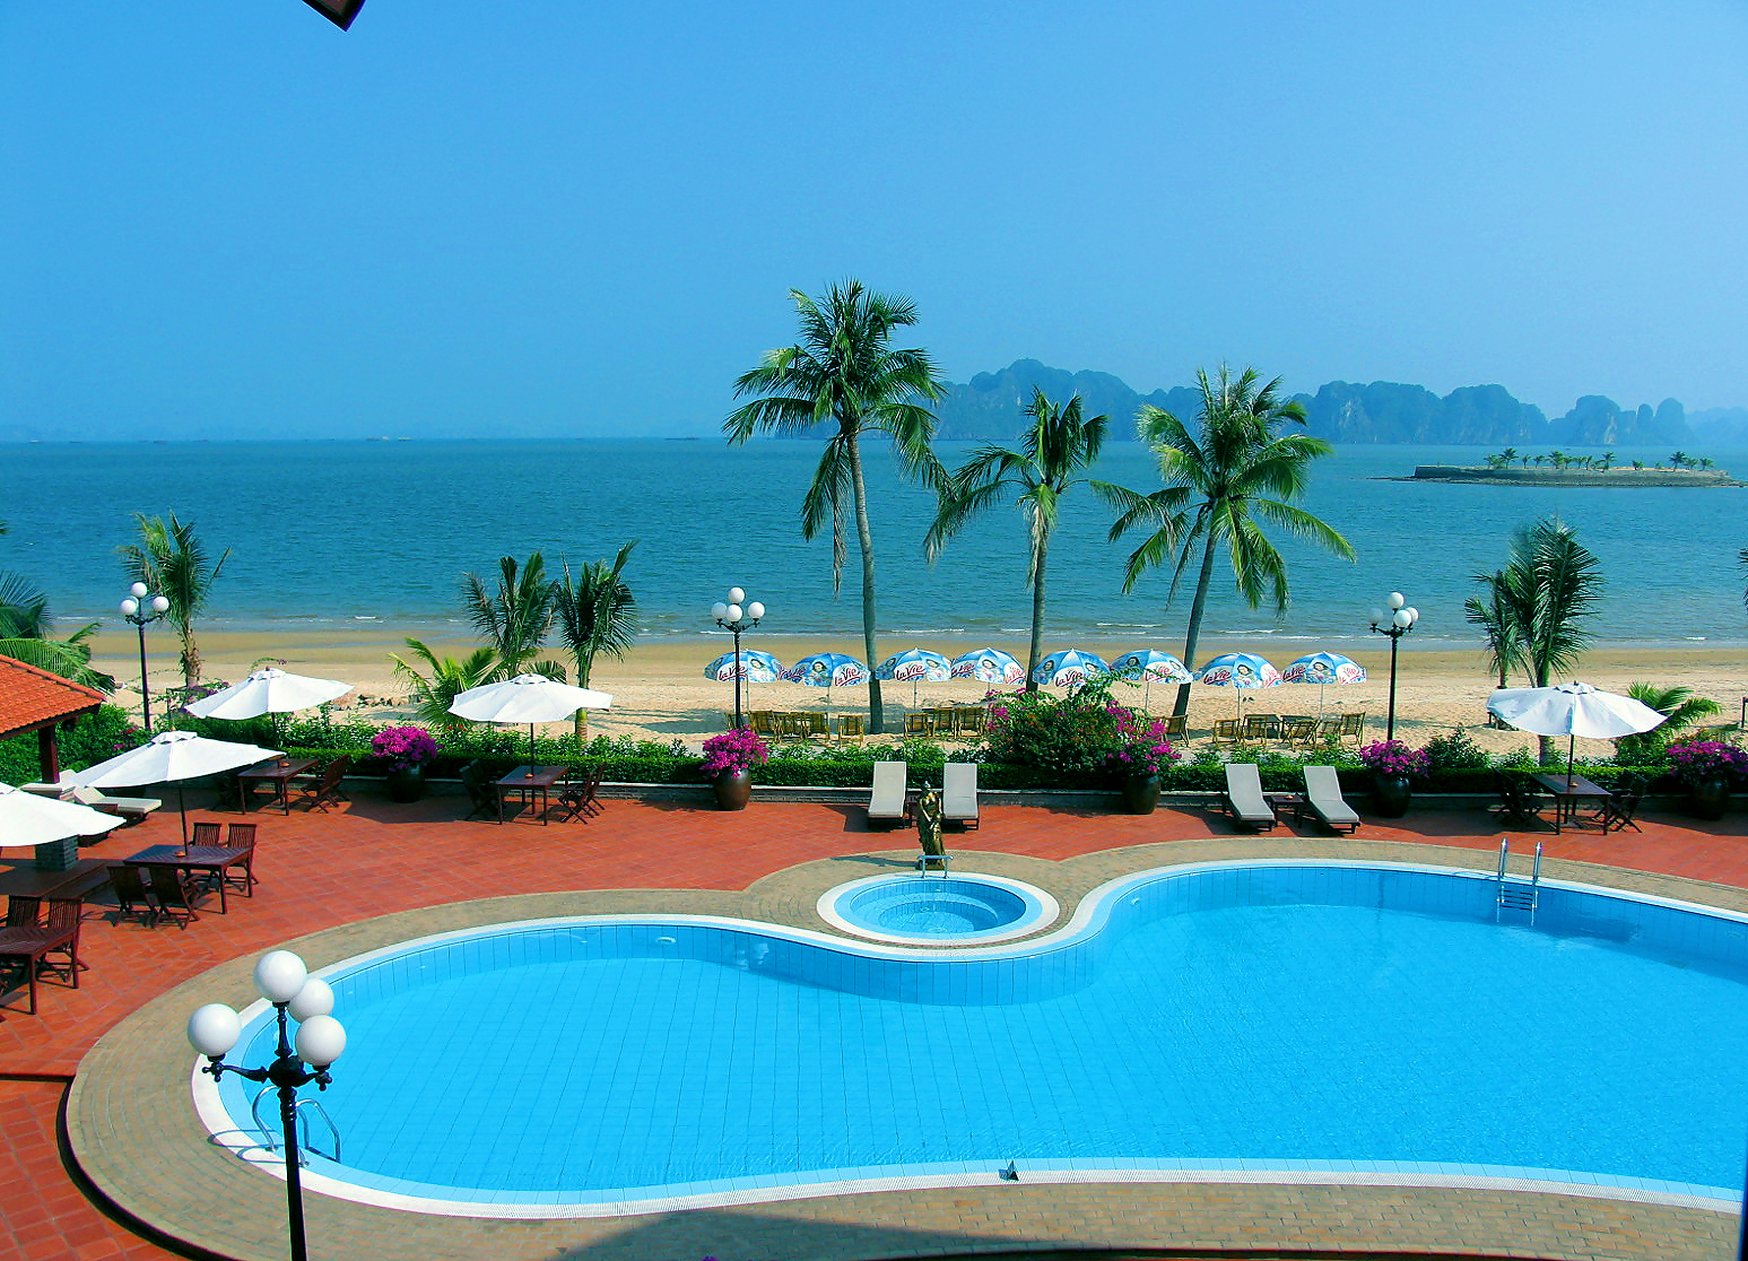 Tuan Chau Resort beach'in fotoğrafı çok temiz temizlik seviyesi ile